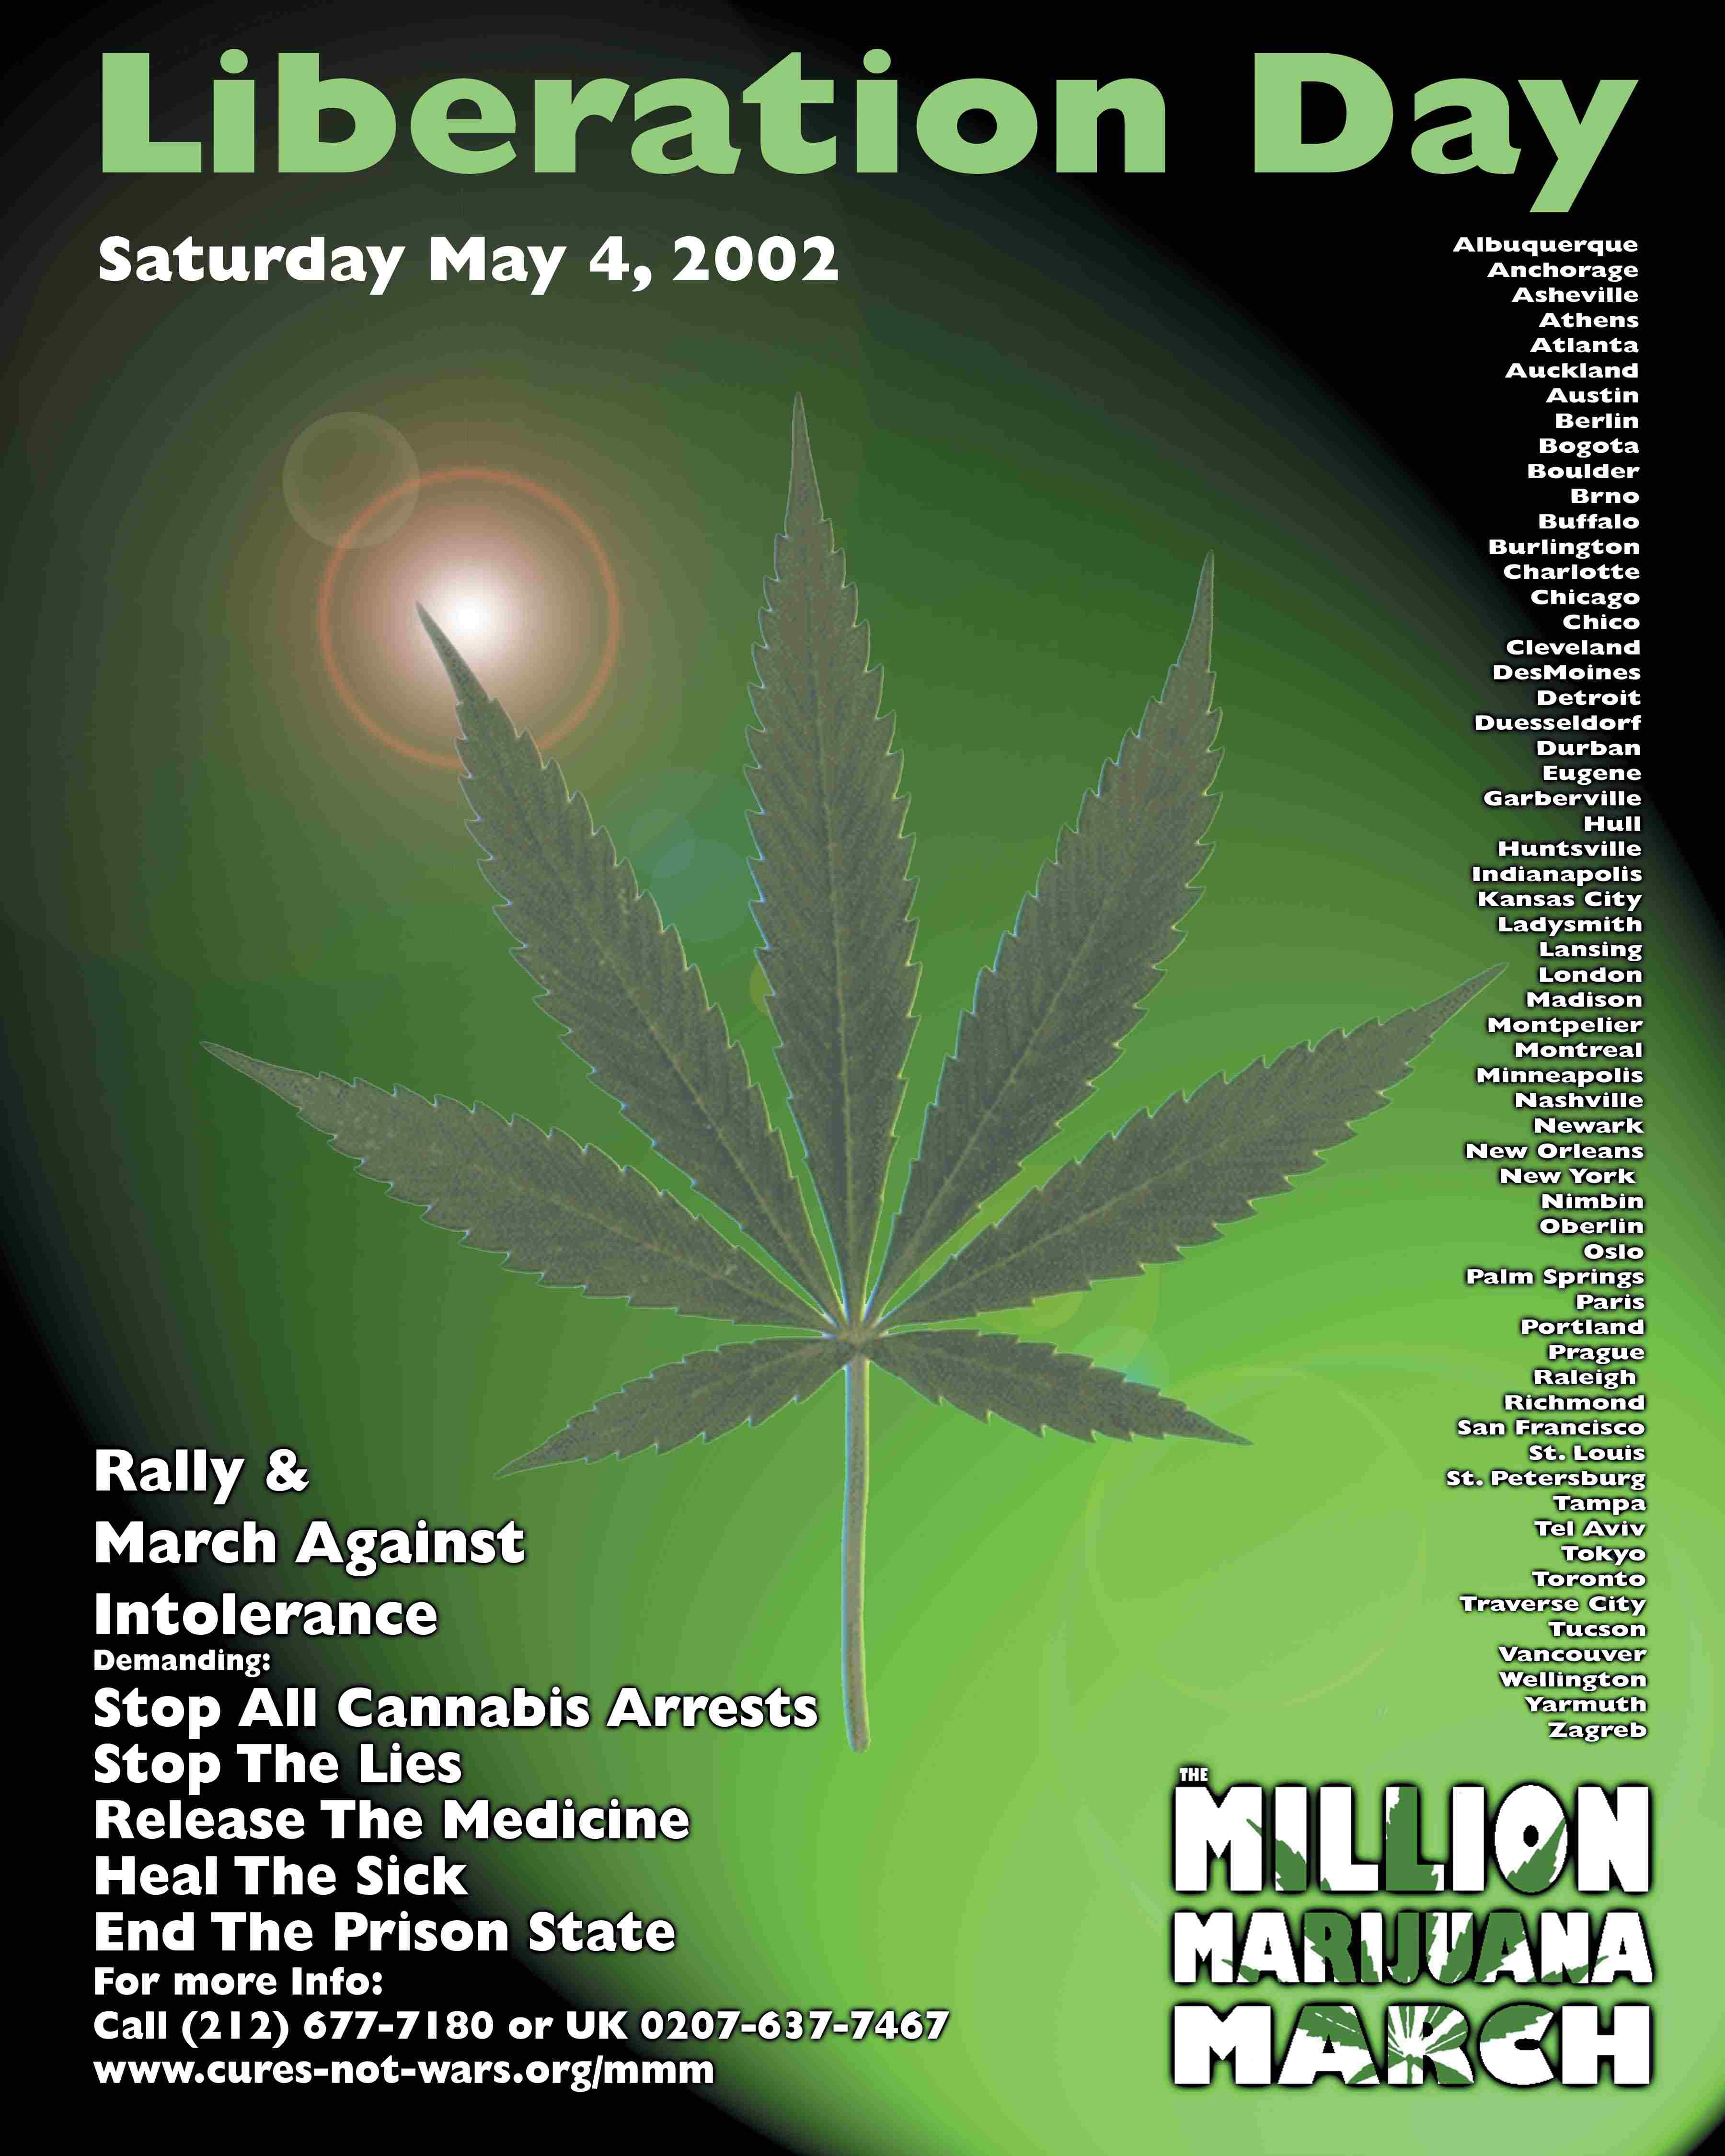 Million Marijuana March 2002